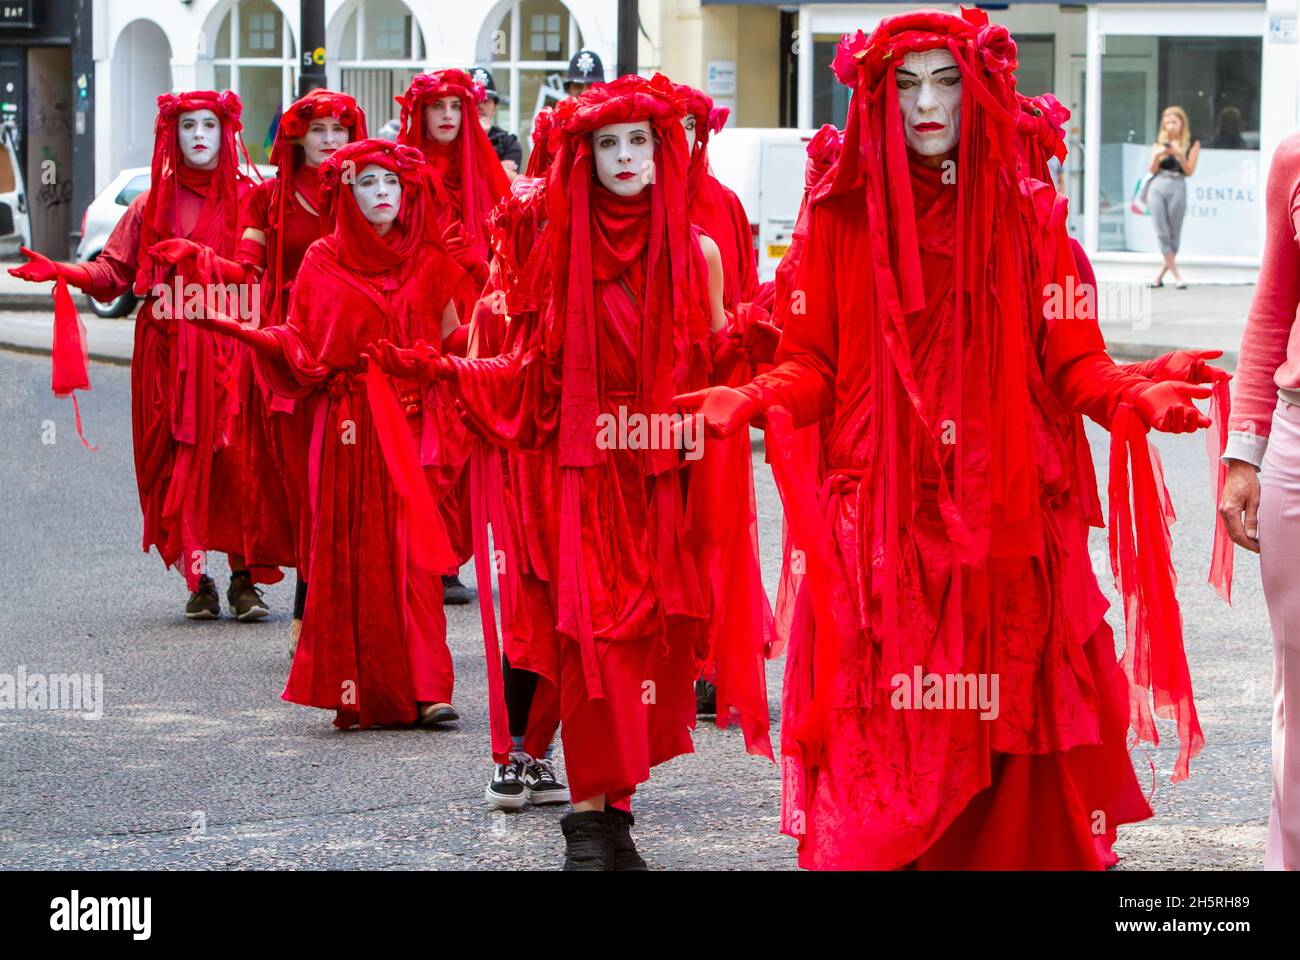 Photographie de rue d'un groupe d'artistes du cirque invisible de la Brigade Rouge lors d'une manifestation sur le changement climatique en ligne dans les rues. Banque D'Images